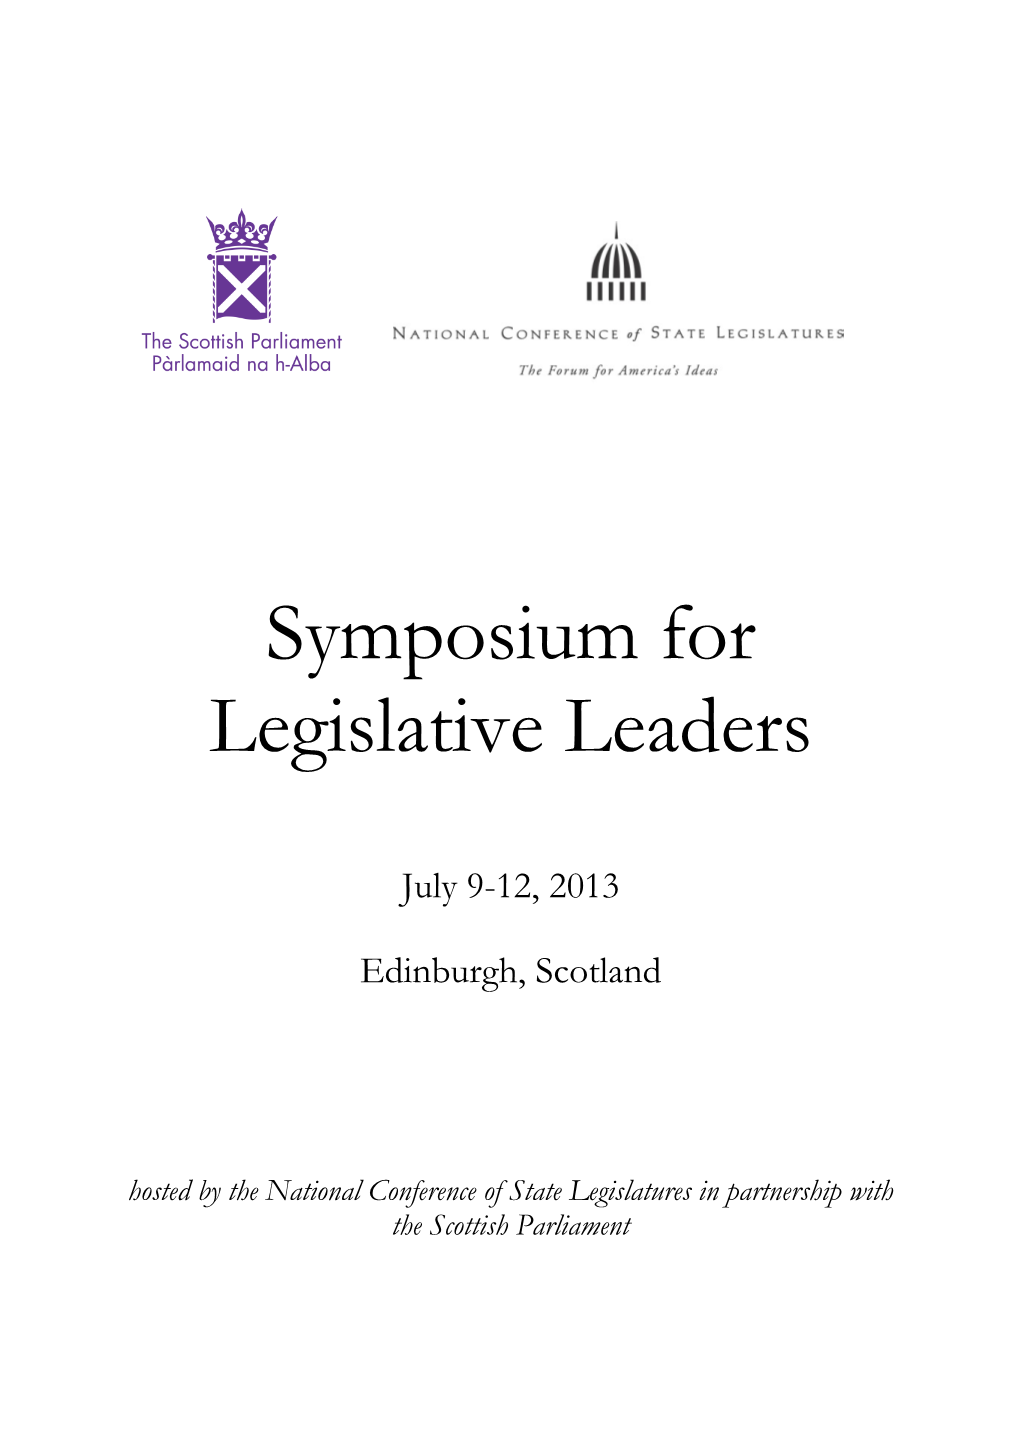 Symposium for Legislative Leaders